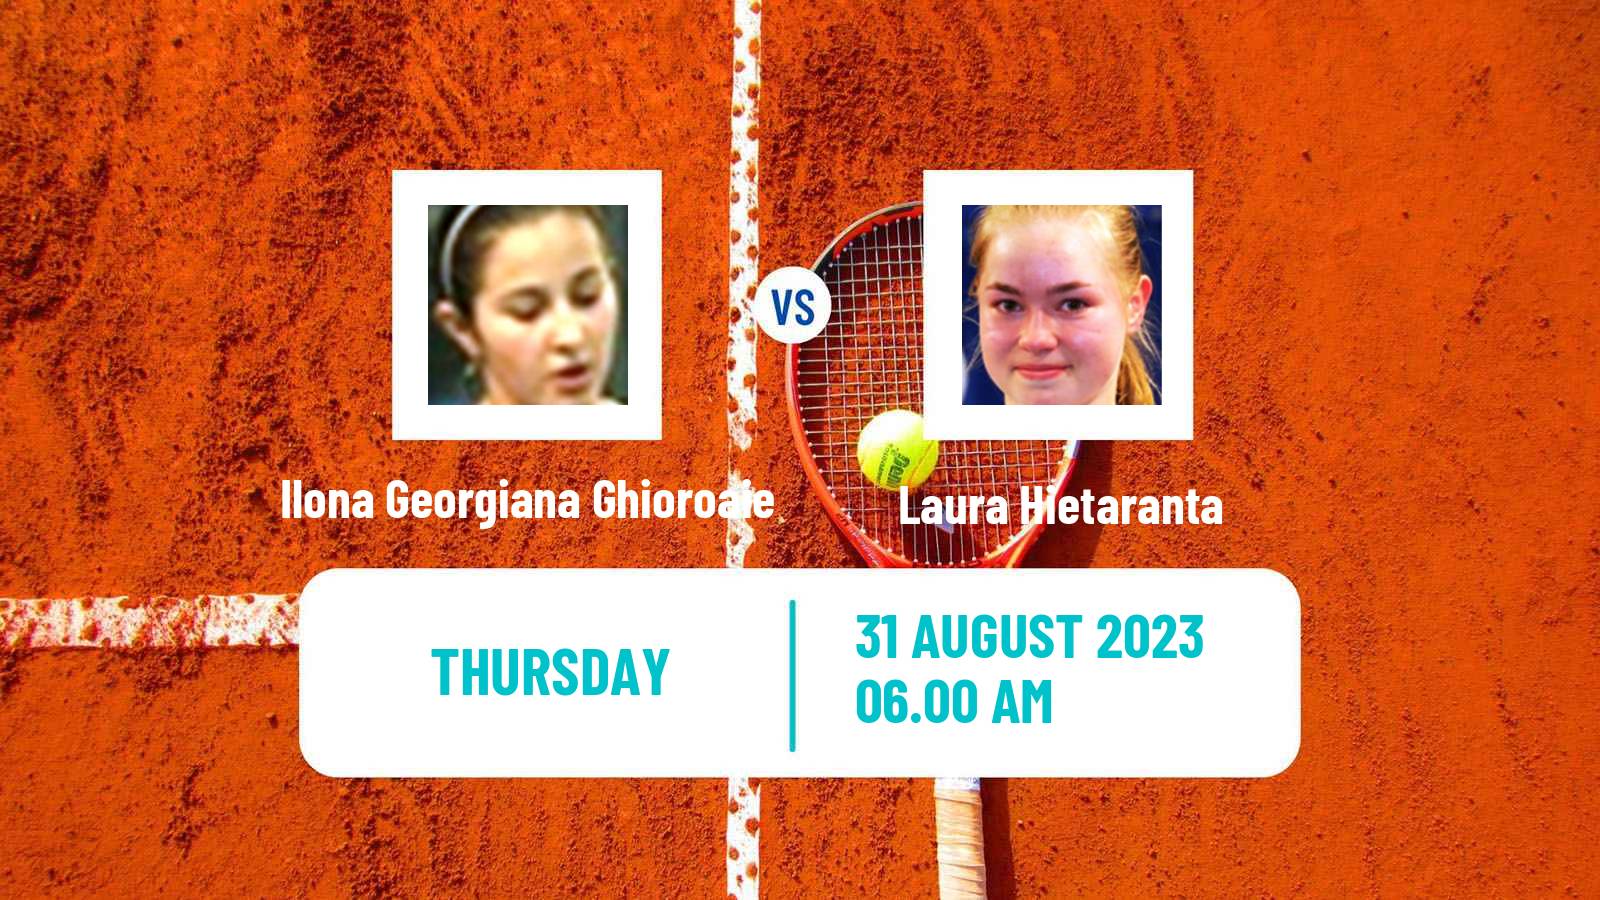 Tennis ITF W25 Trieste Women Ilona Georgiana Ghioroaie - Laura Hietaranta